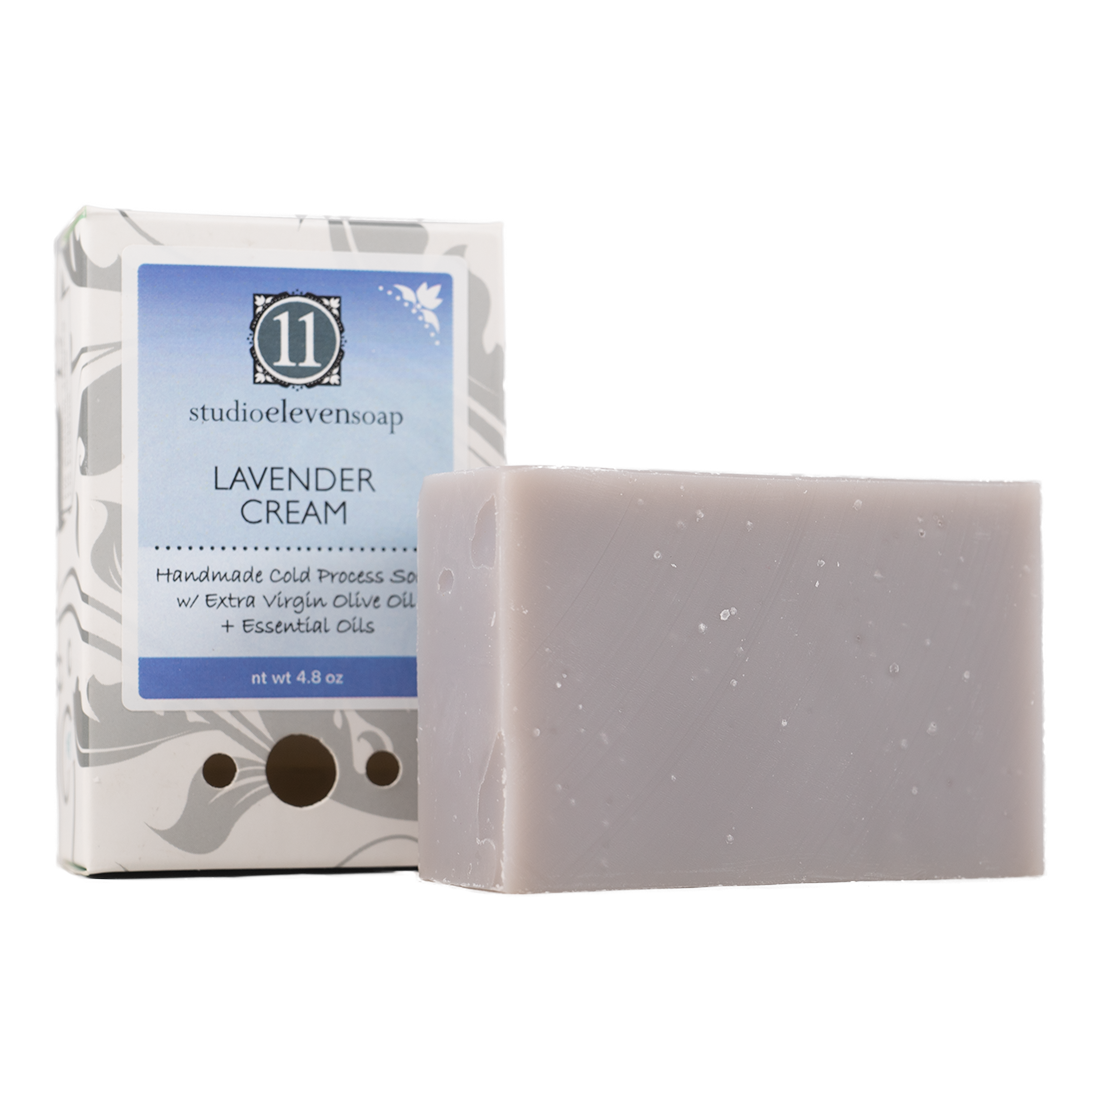 Handmade Cold Press Soap Lavender Cream Scent